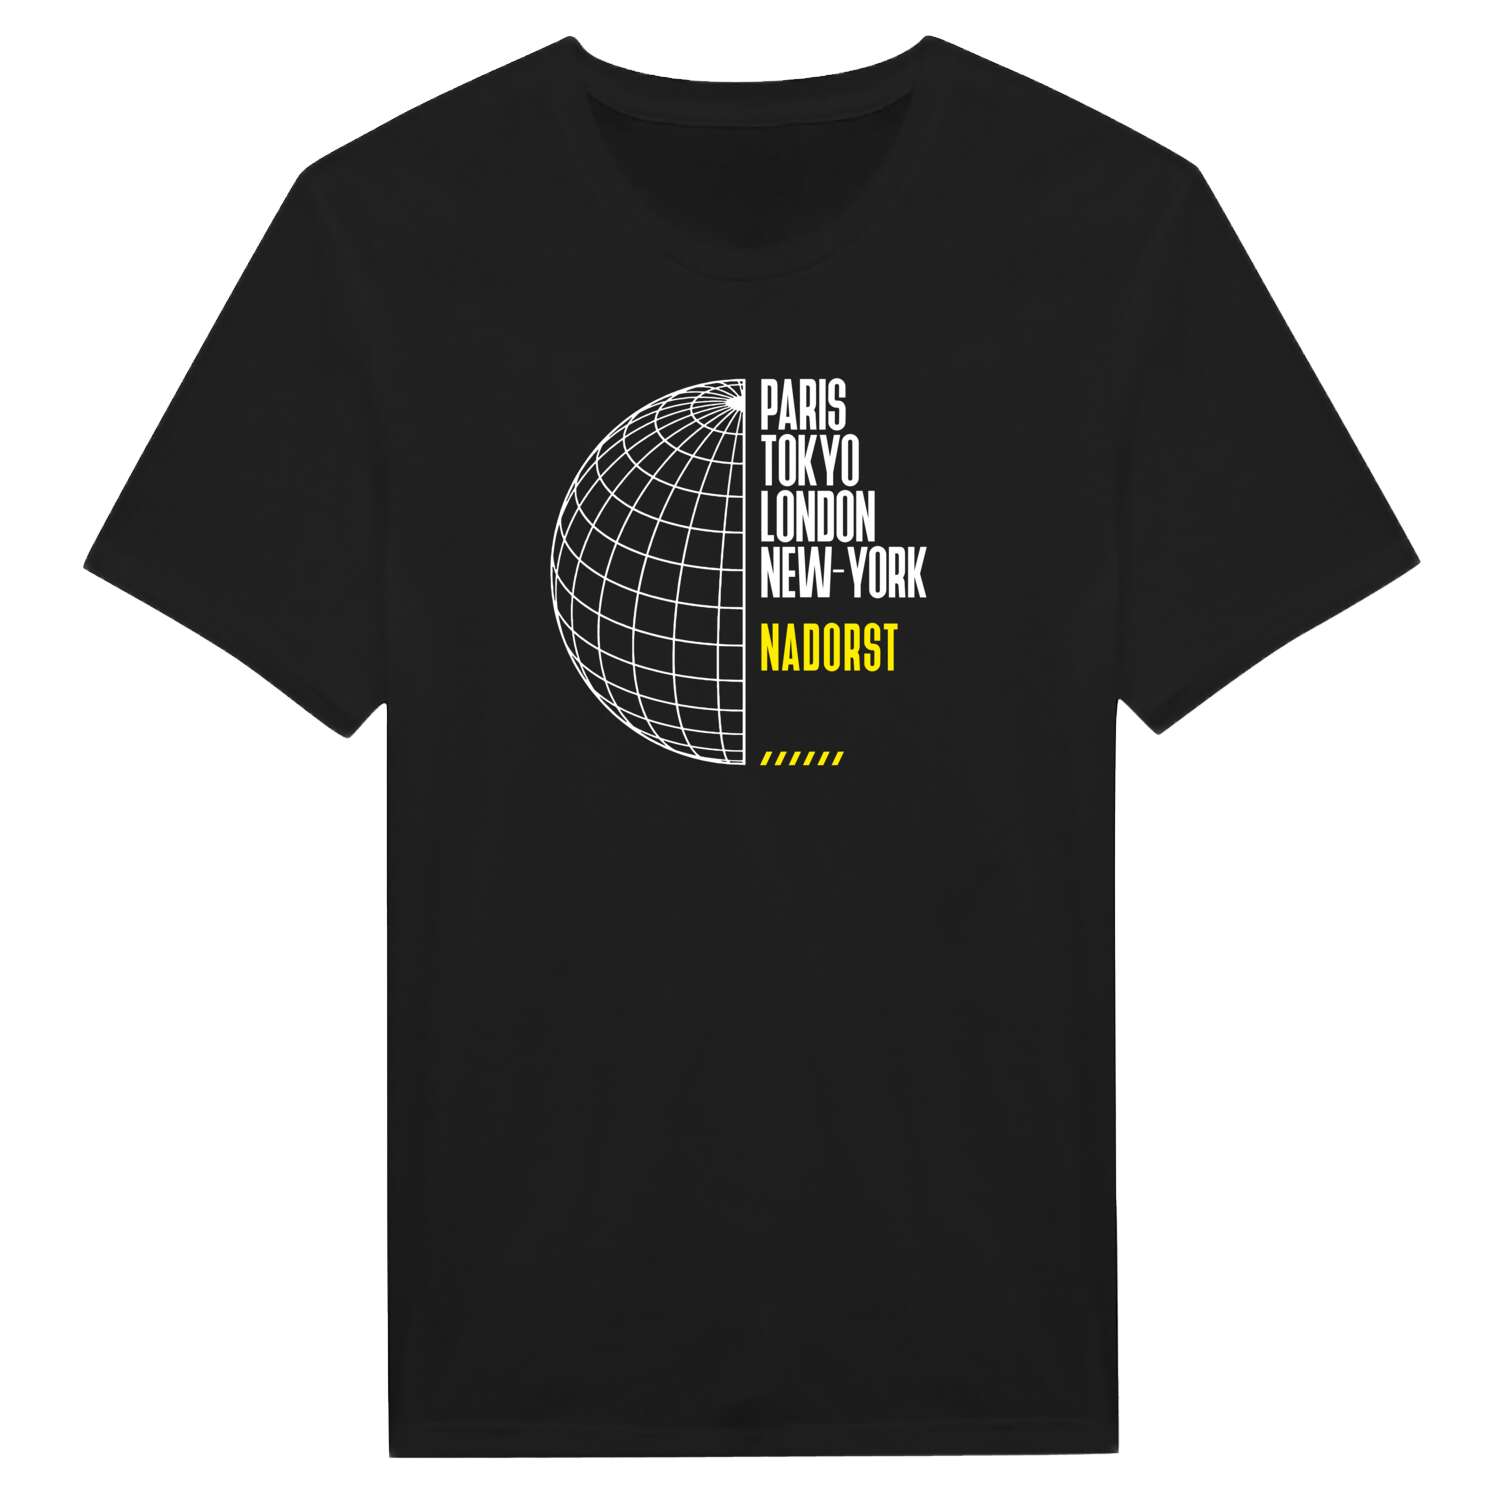 Nadorst T-Shirt »Paris Tokyo London«